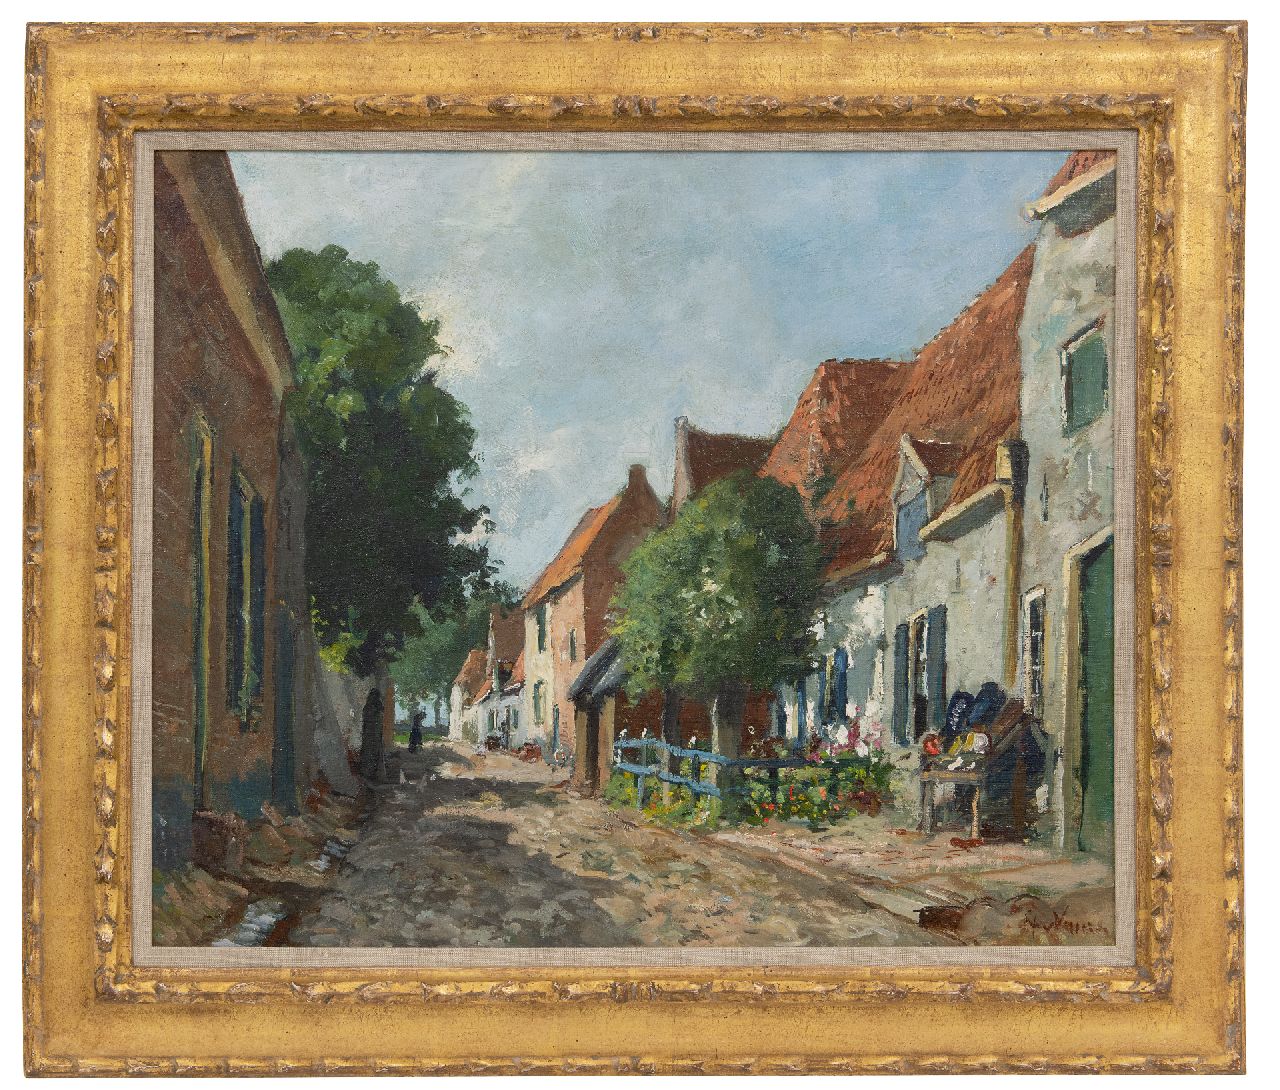 Vuuren J. van | Jan van Vuuren | Schilderijen te koop aangeboden | Elburg op een zonnige dag, olieverf op doek 50,0 x 60,0 cm, gesigneerd rechtsonder